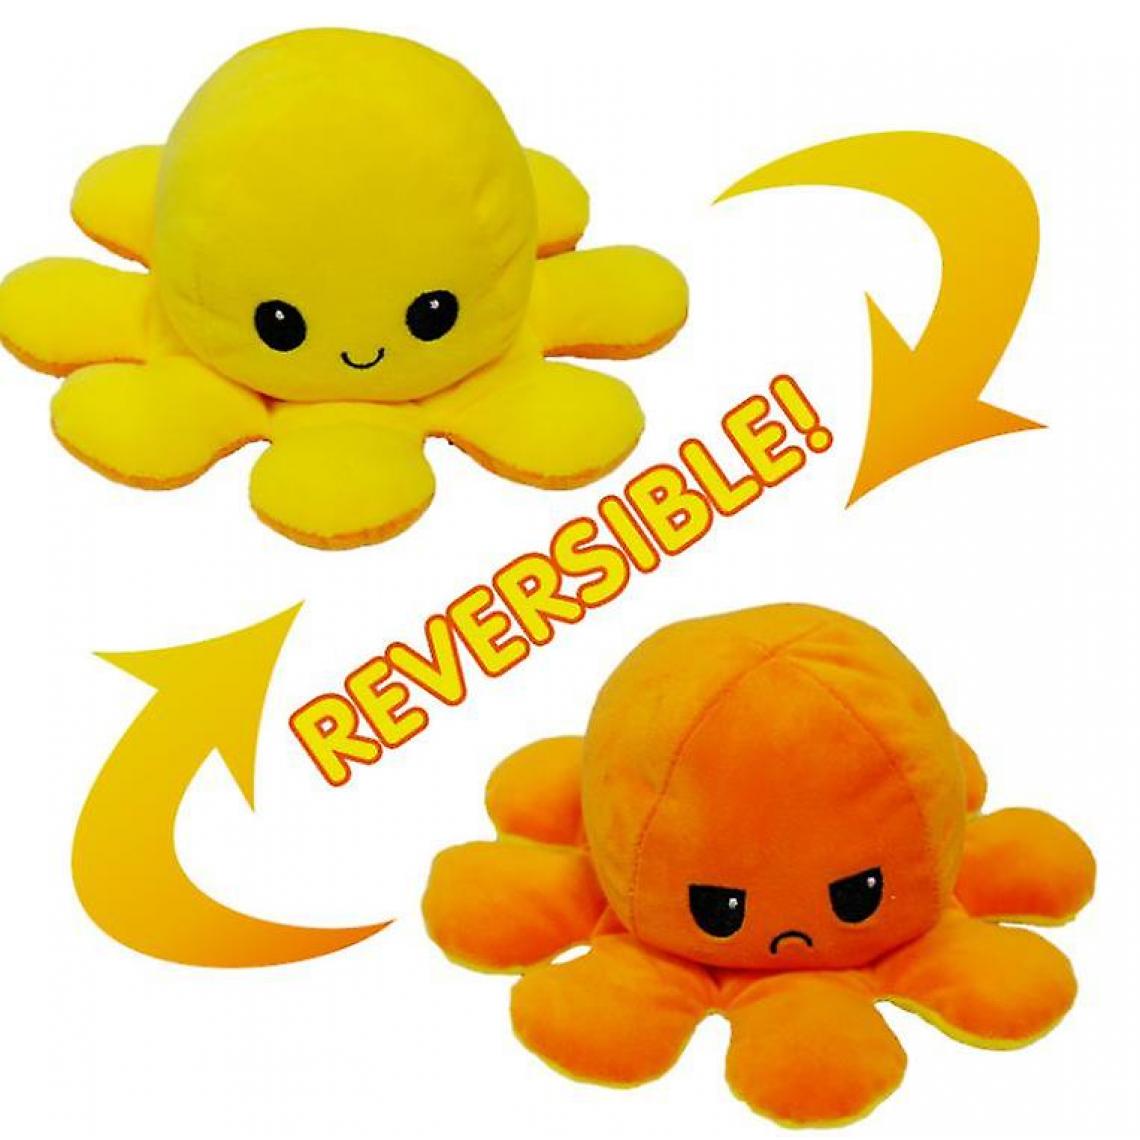 Universal - Peluche réversible, peluche retournée double face Peluche lumineuse réversible Pieuvre réversible (jaune orange) - Animaux